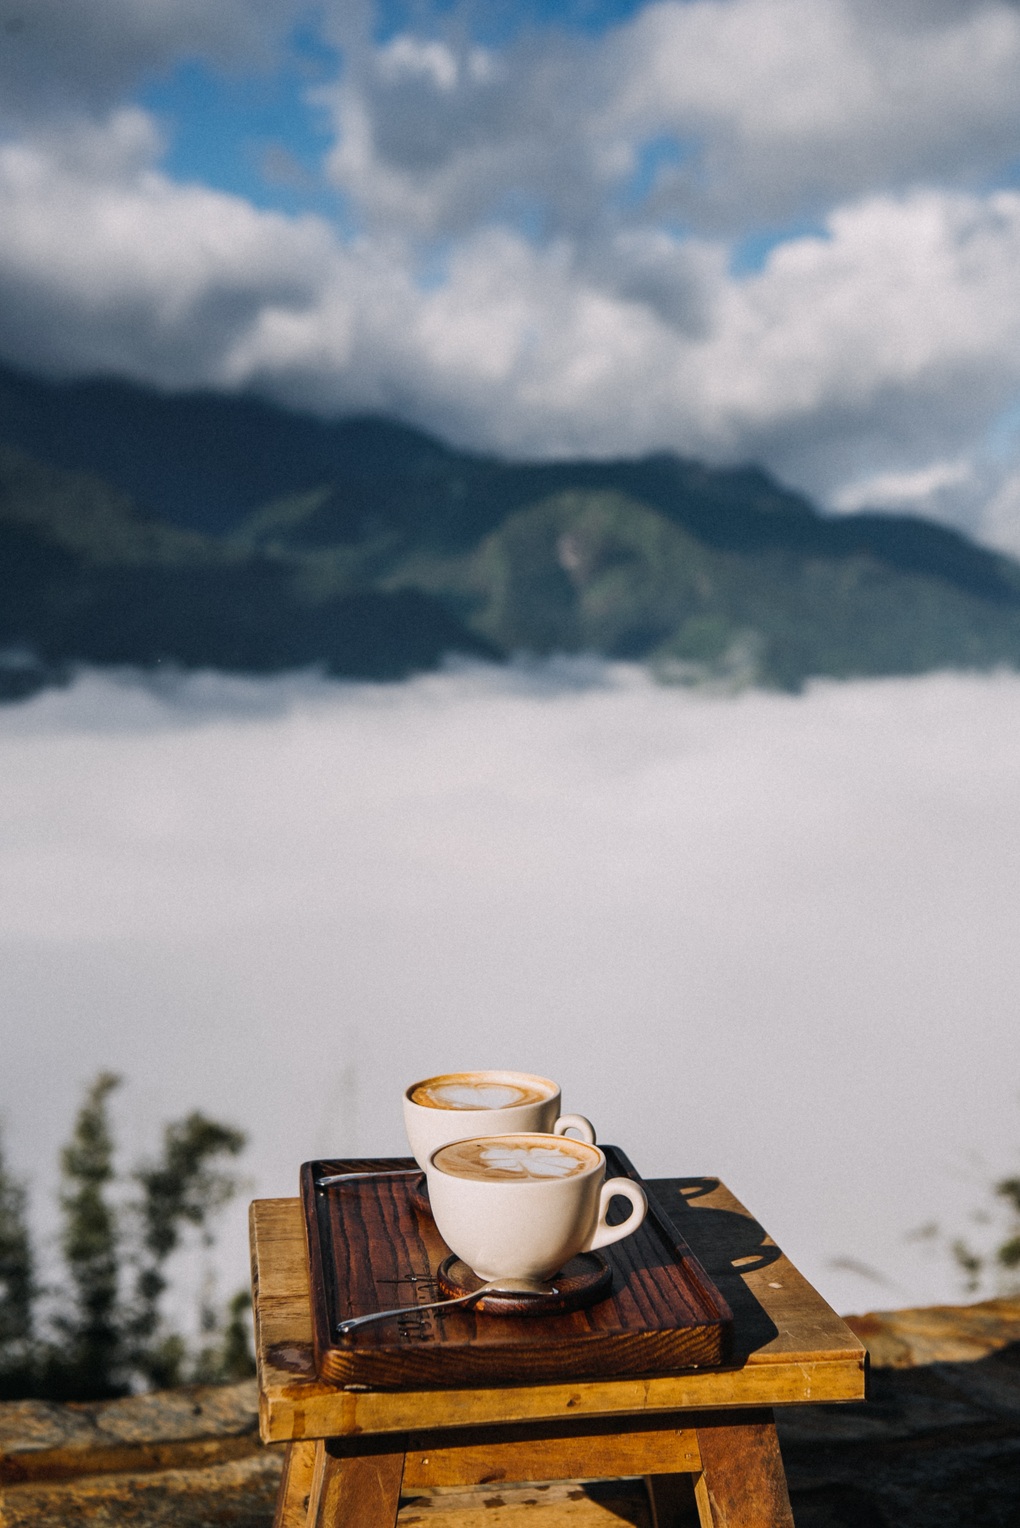 Độc đáo quán cà phê neo mình bên sườn núi ở Sapa